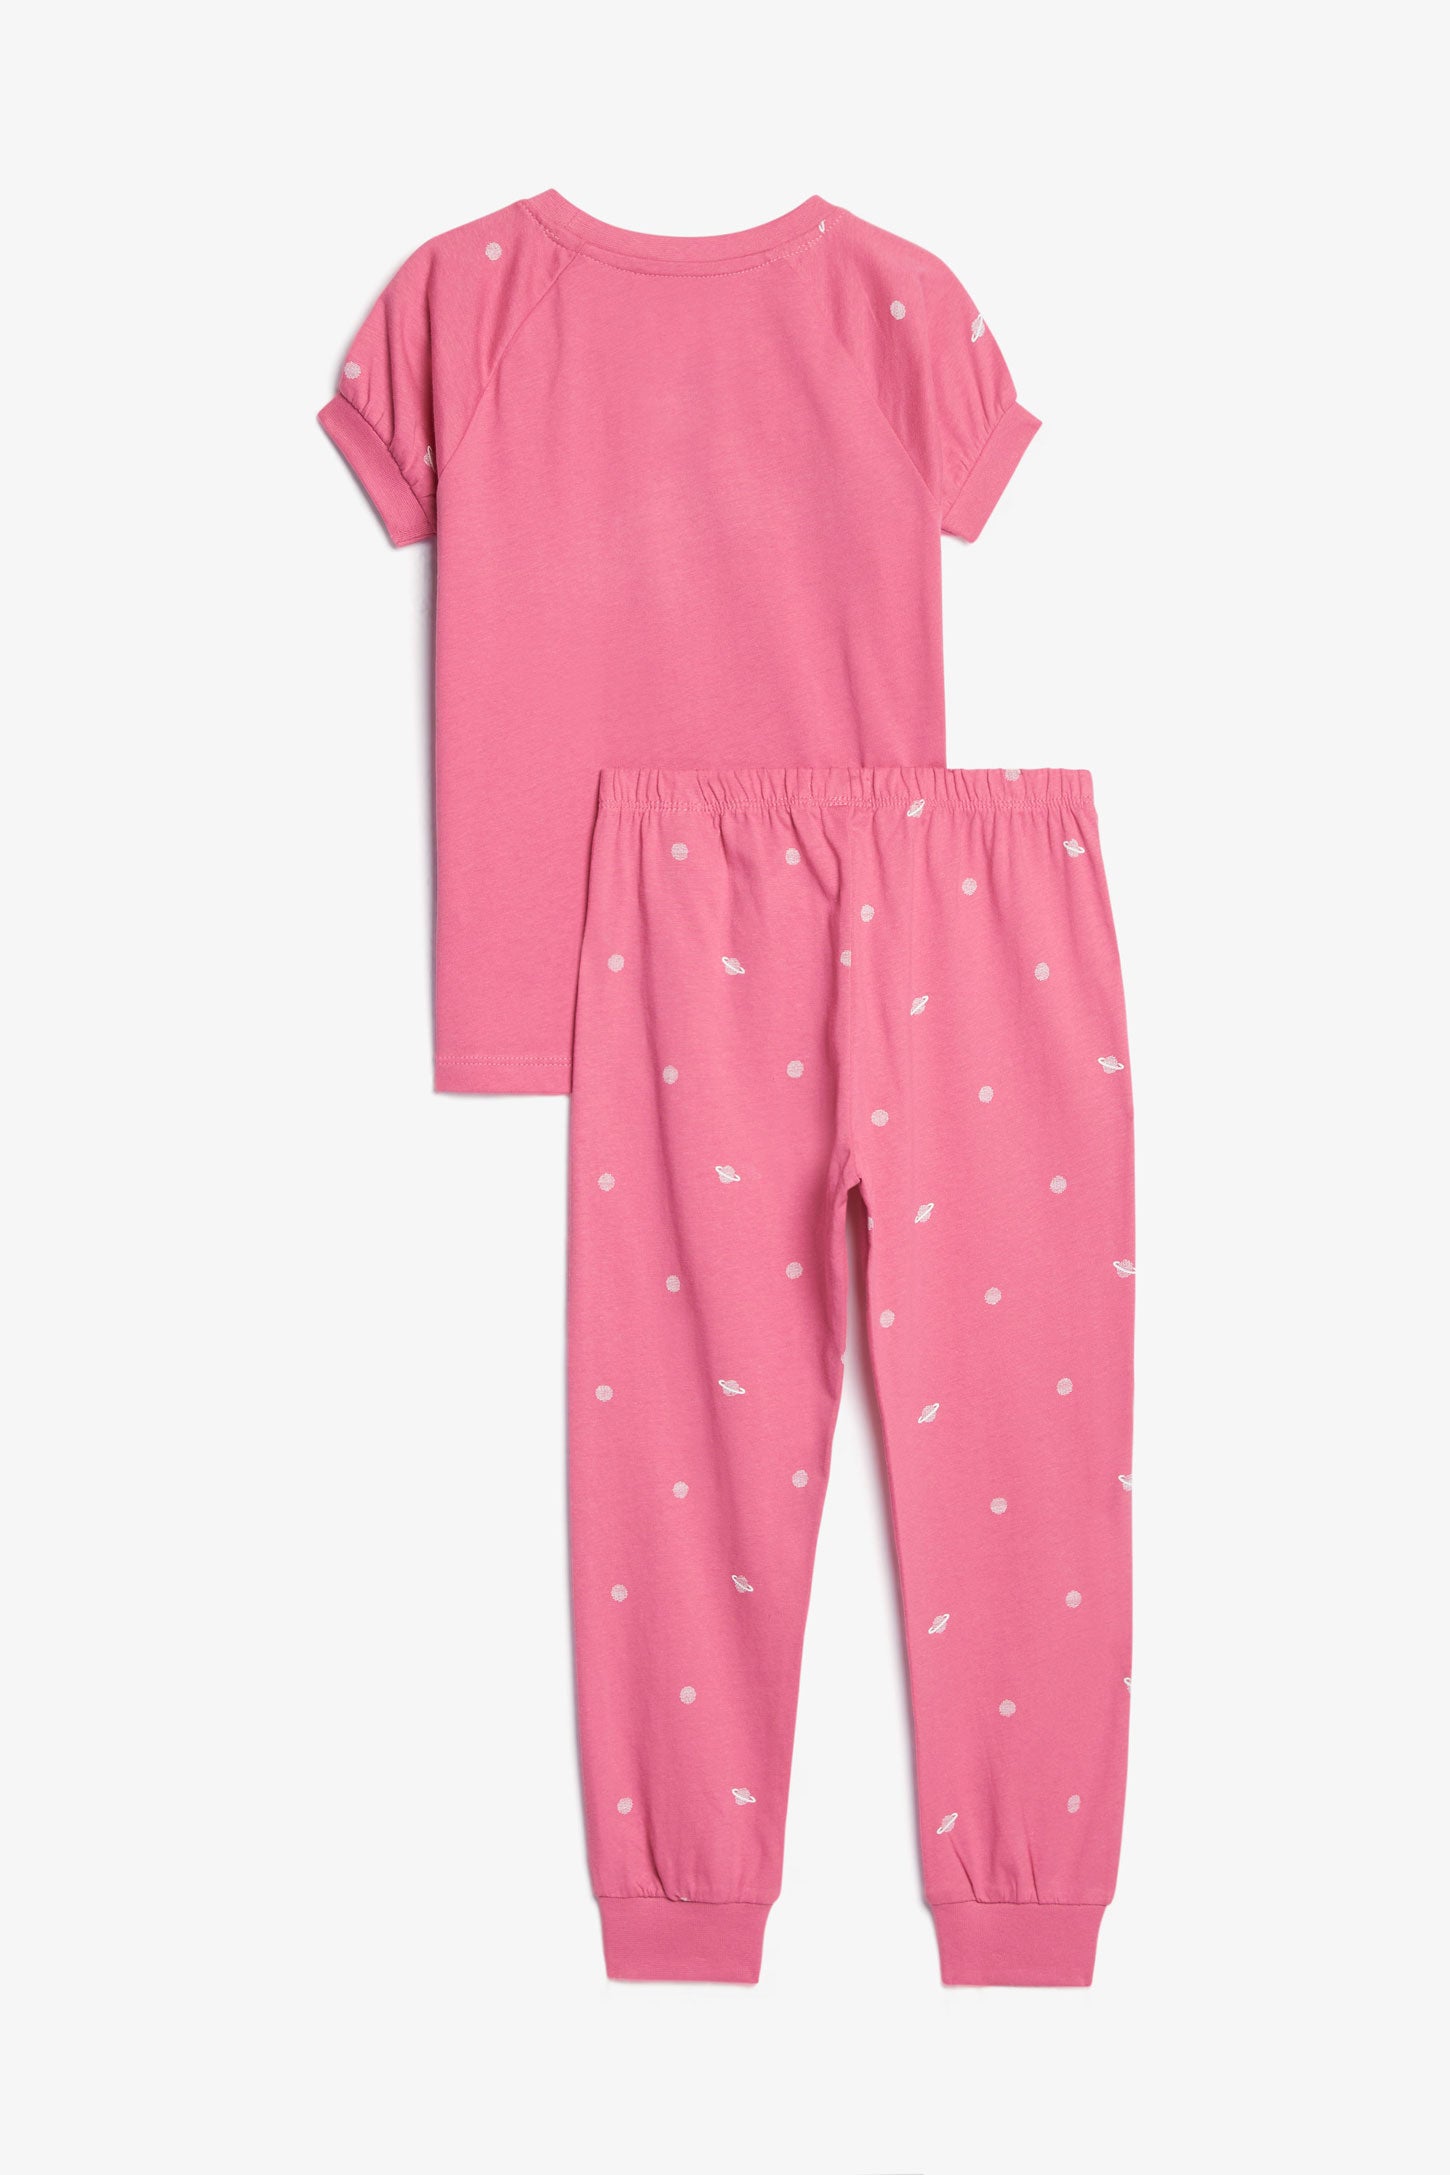 Pyjama 2-pièces en coton, 2/35$ - Enfant fille && ROSE FONCE